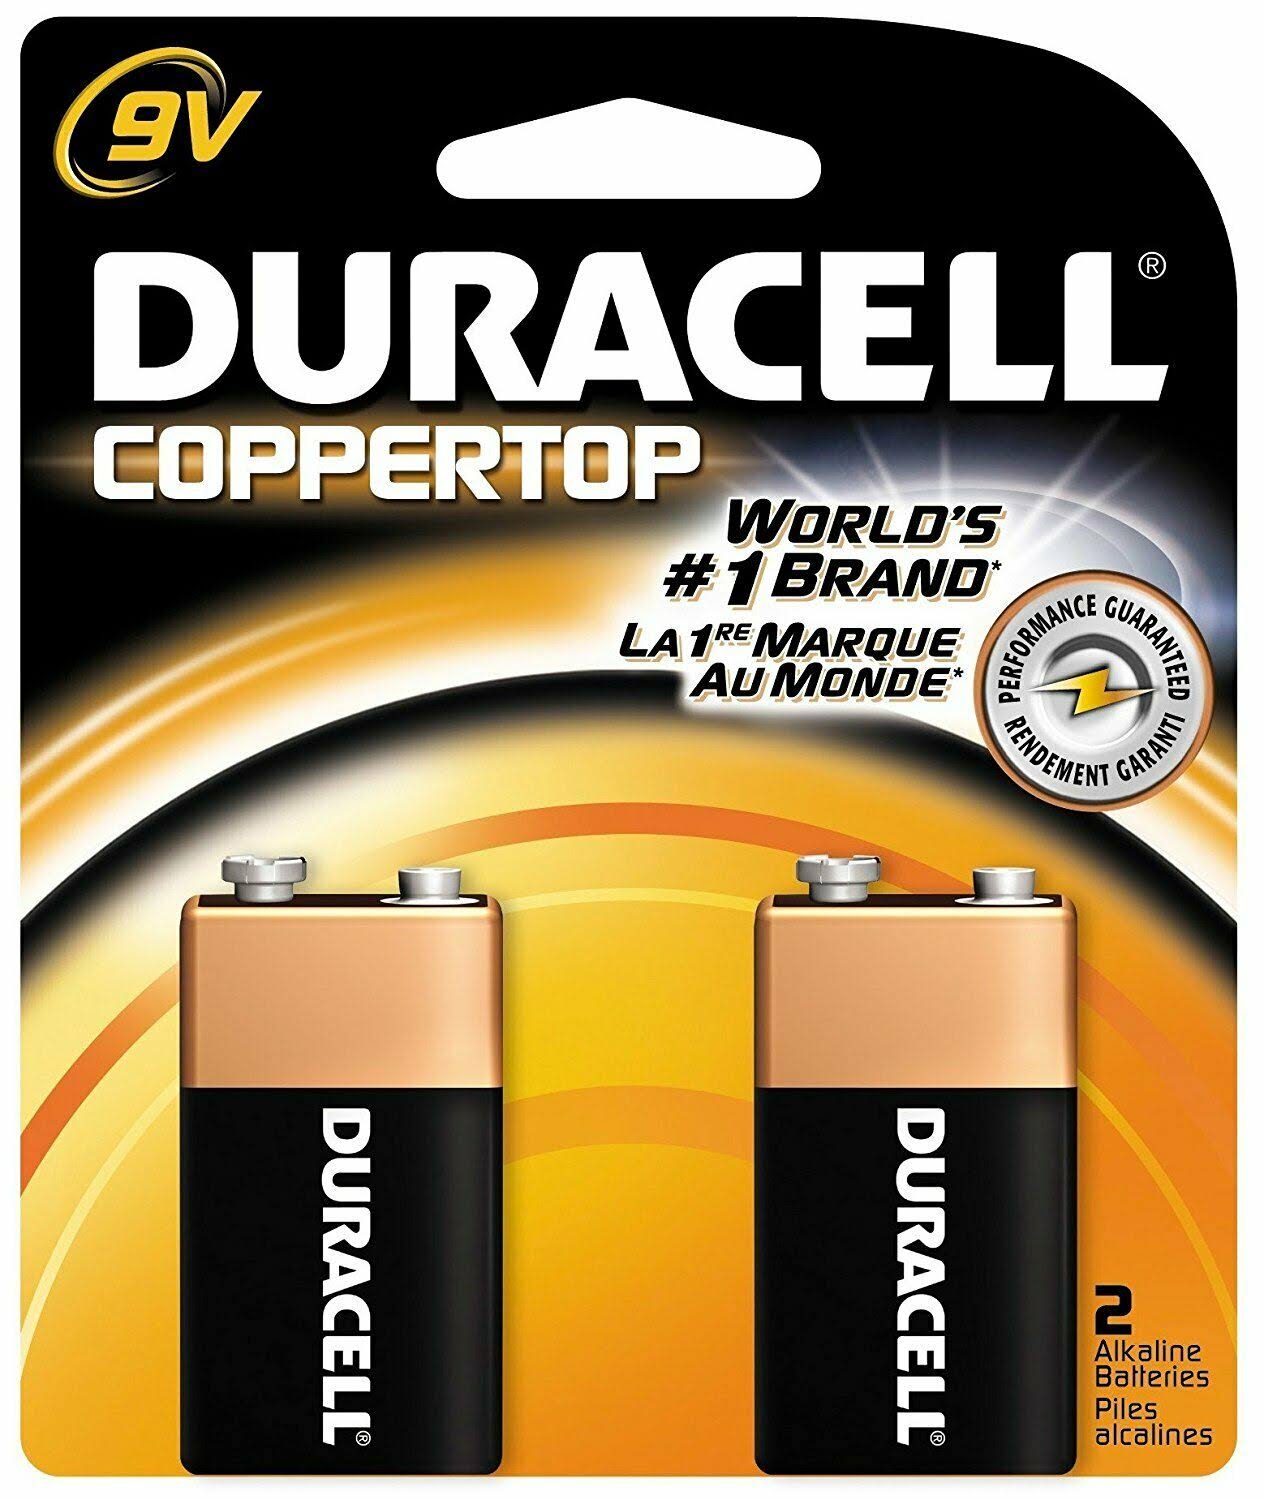 Duracell 9V Alkaline Batteries - 2 pack